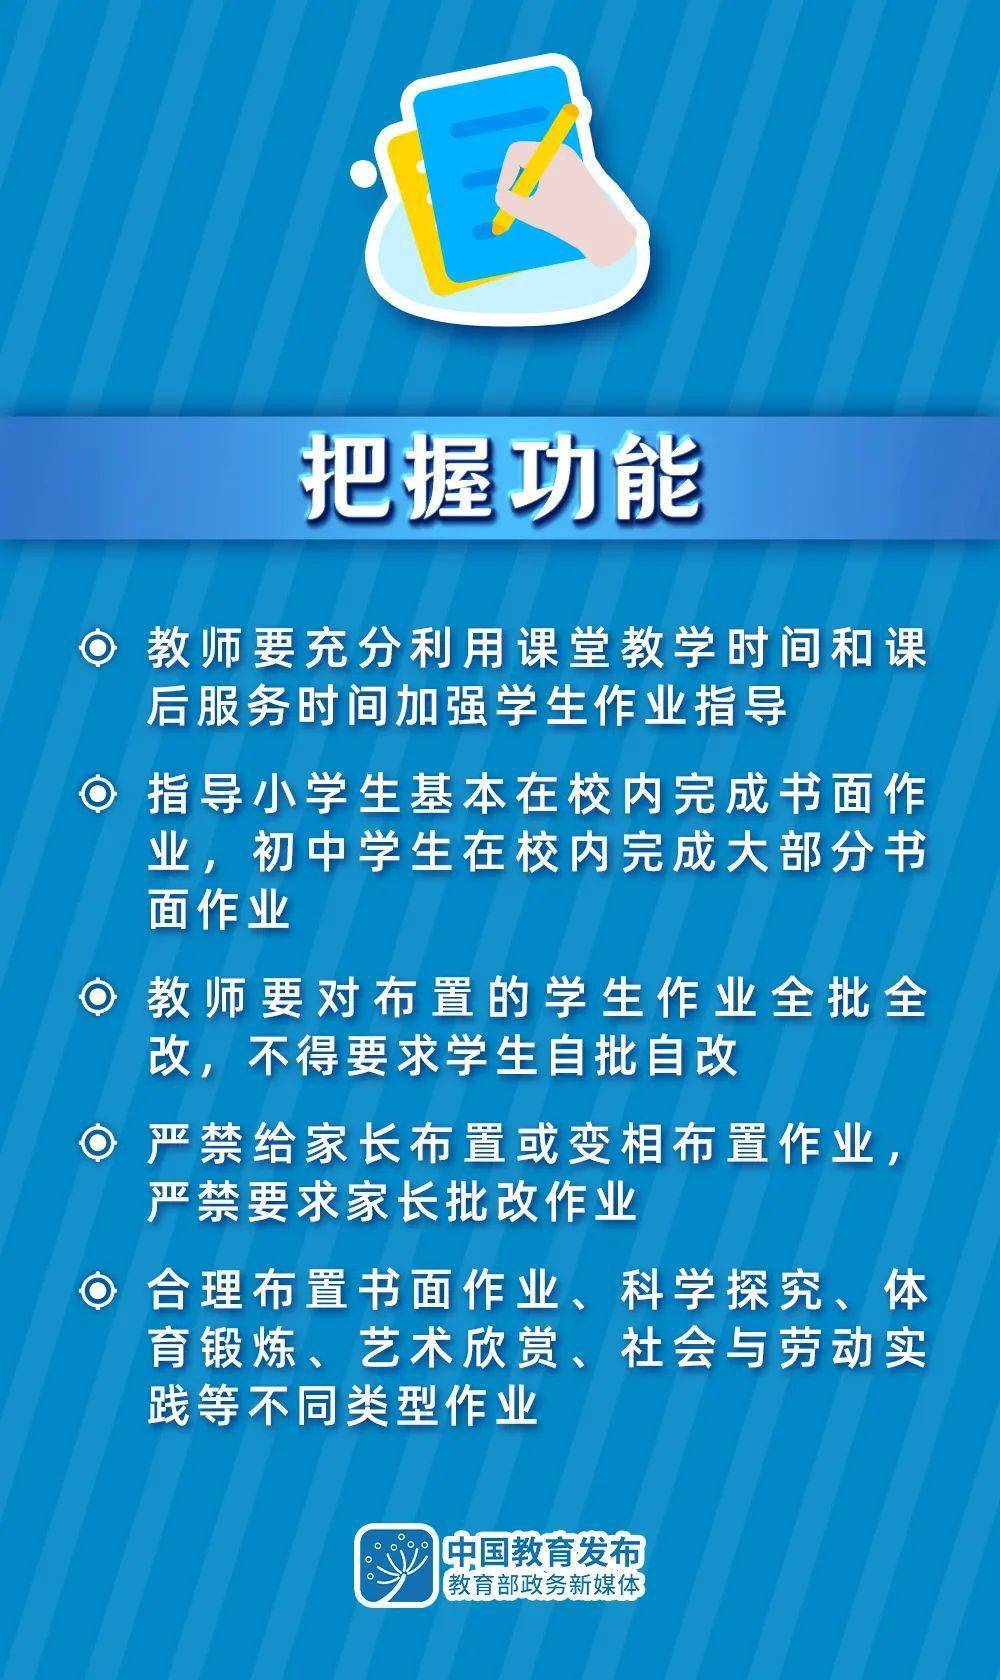 重磅 教育部 严禁给家长布置或变相布置作业 一二年级不布置书面家庭作业 辅导 中国启蒙教育